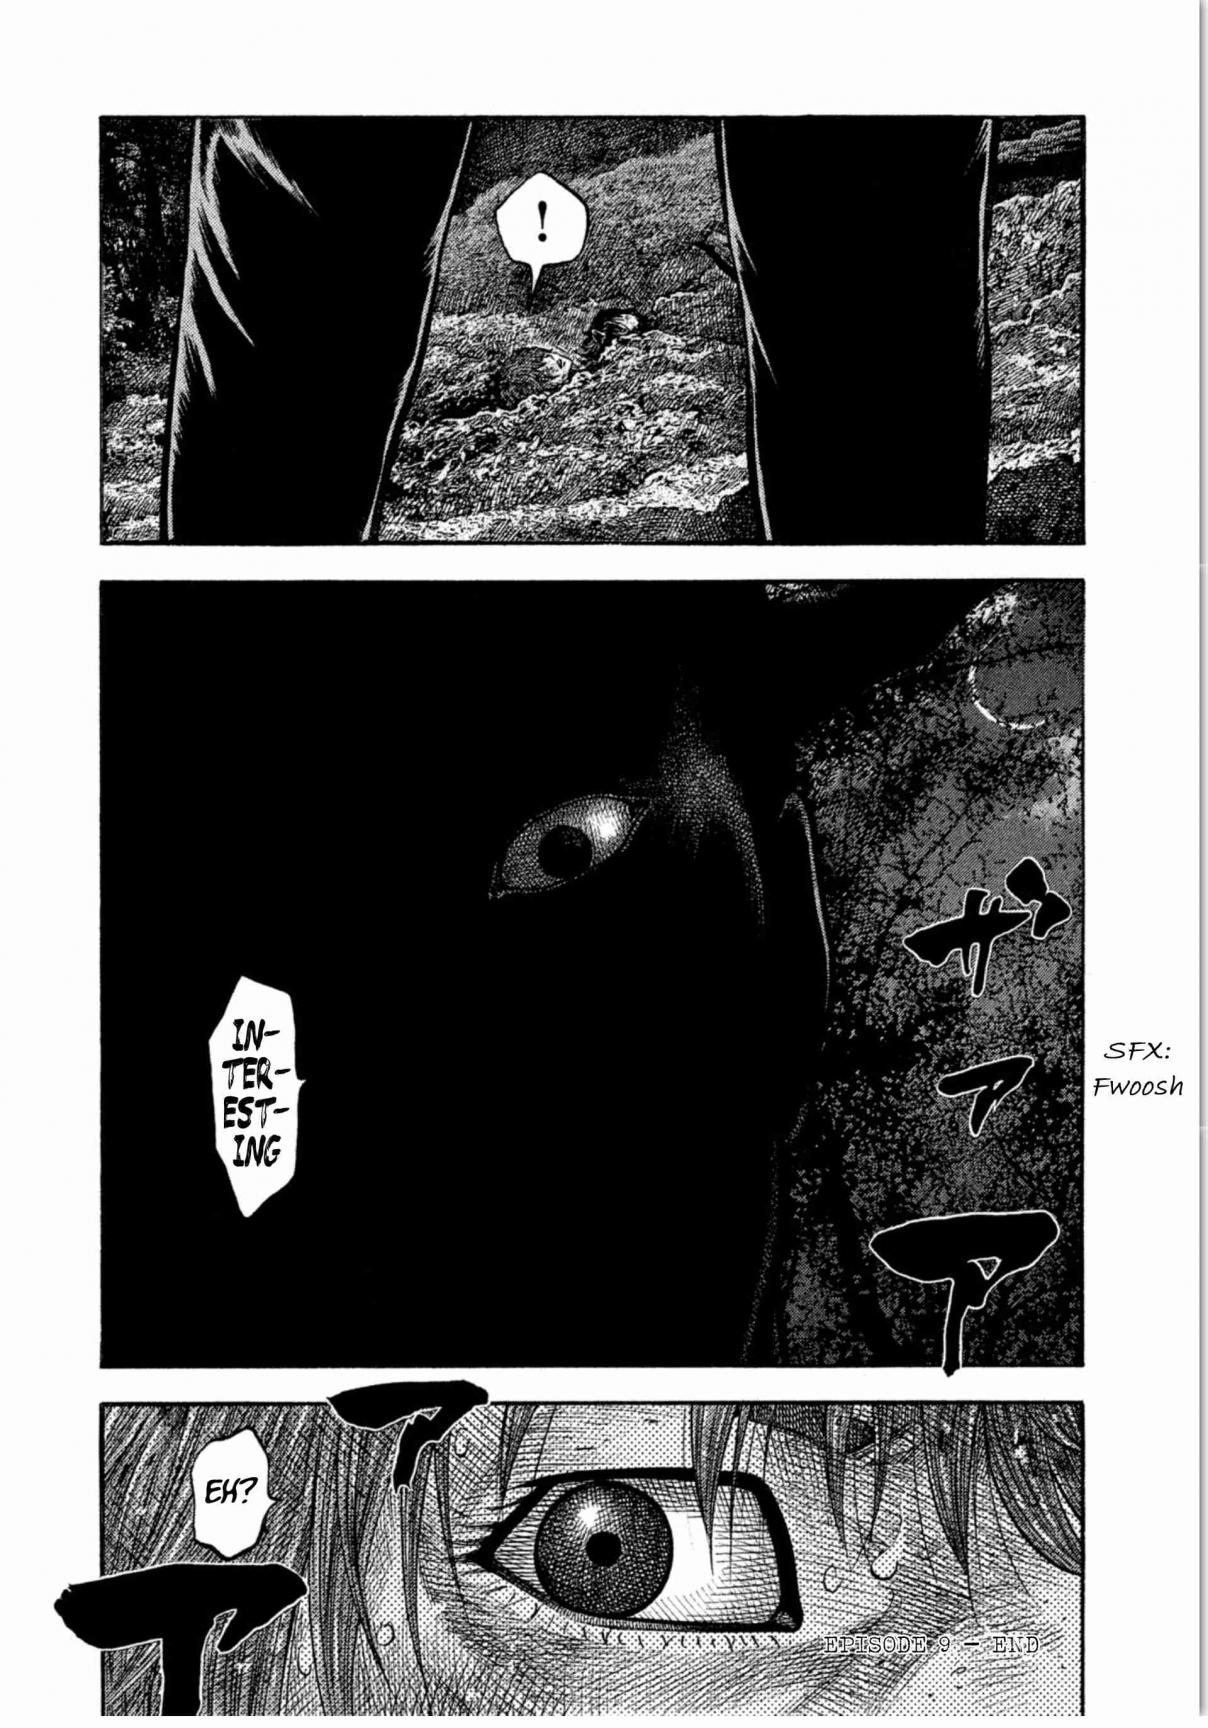 Kudan no Gotoshi Vol. 2 Ch. 9 Chizuru Sakurai < Part 3 >